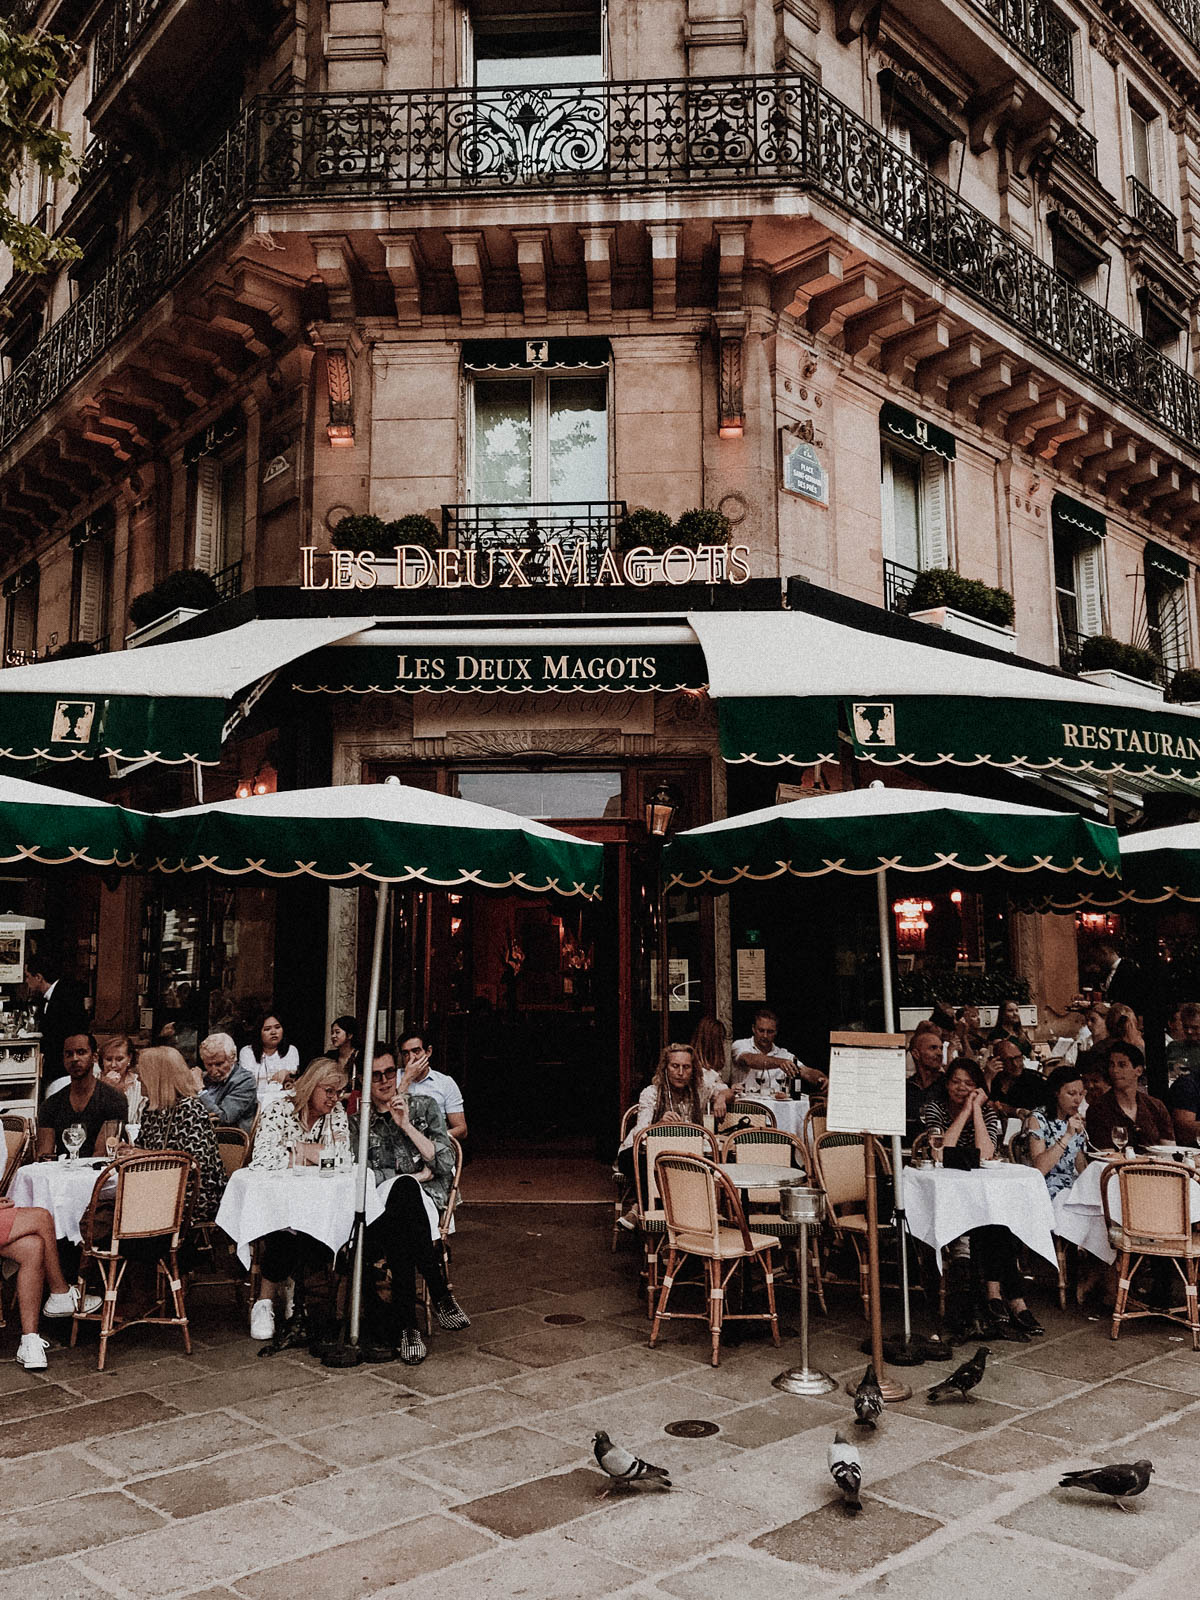 Paris France Travel Guide - Cafe Les Deux Magots, European Architecture and Buildings / RG Daily Blog